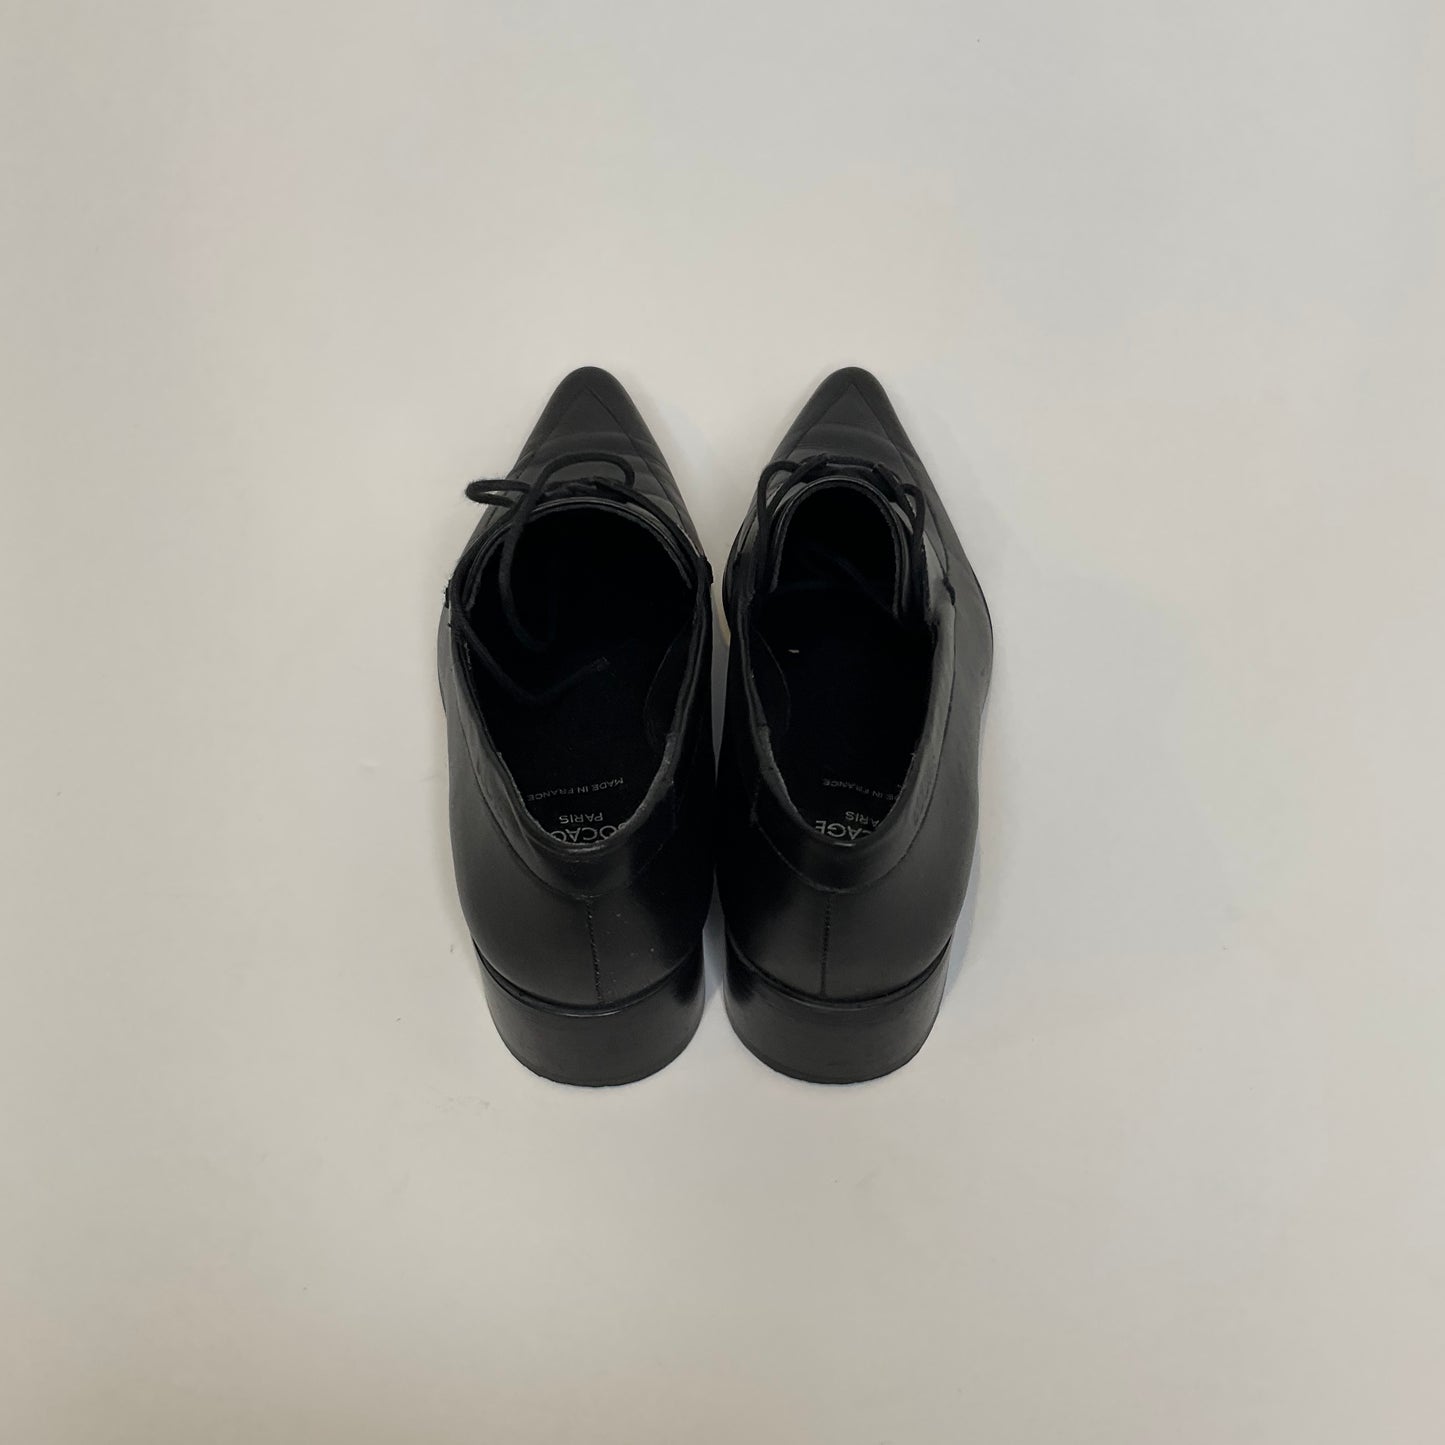 Bocage Paris - Shoes - Size 8.5